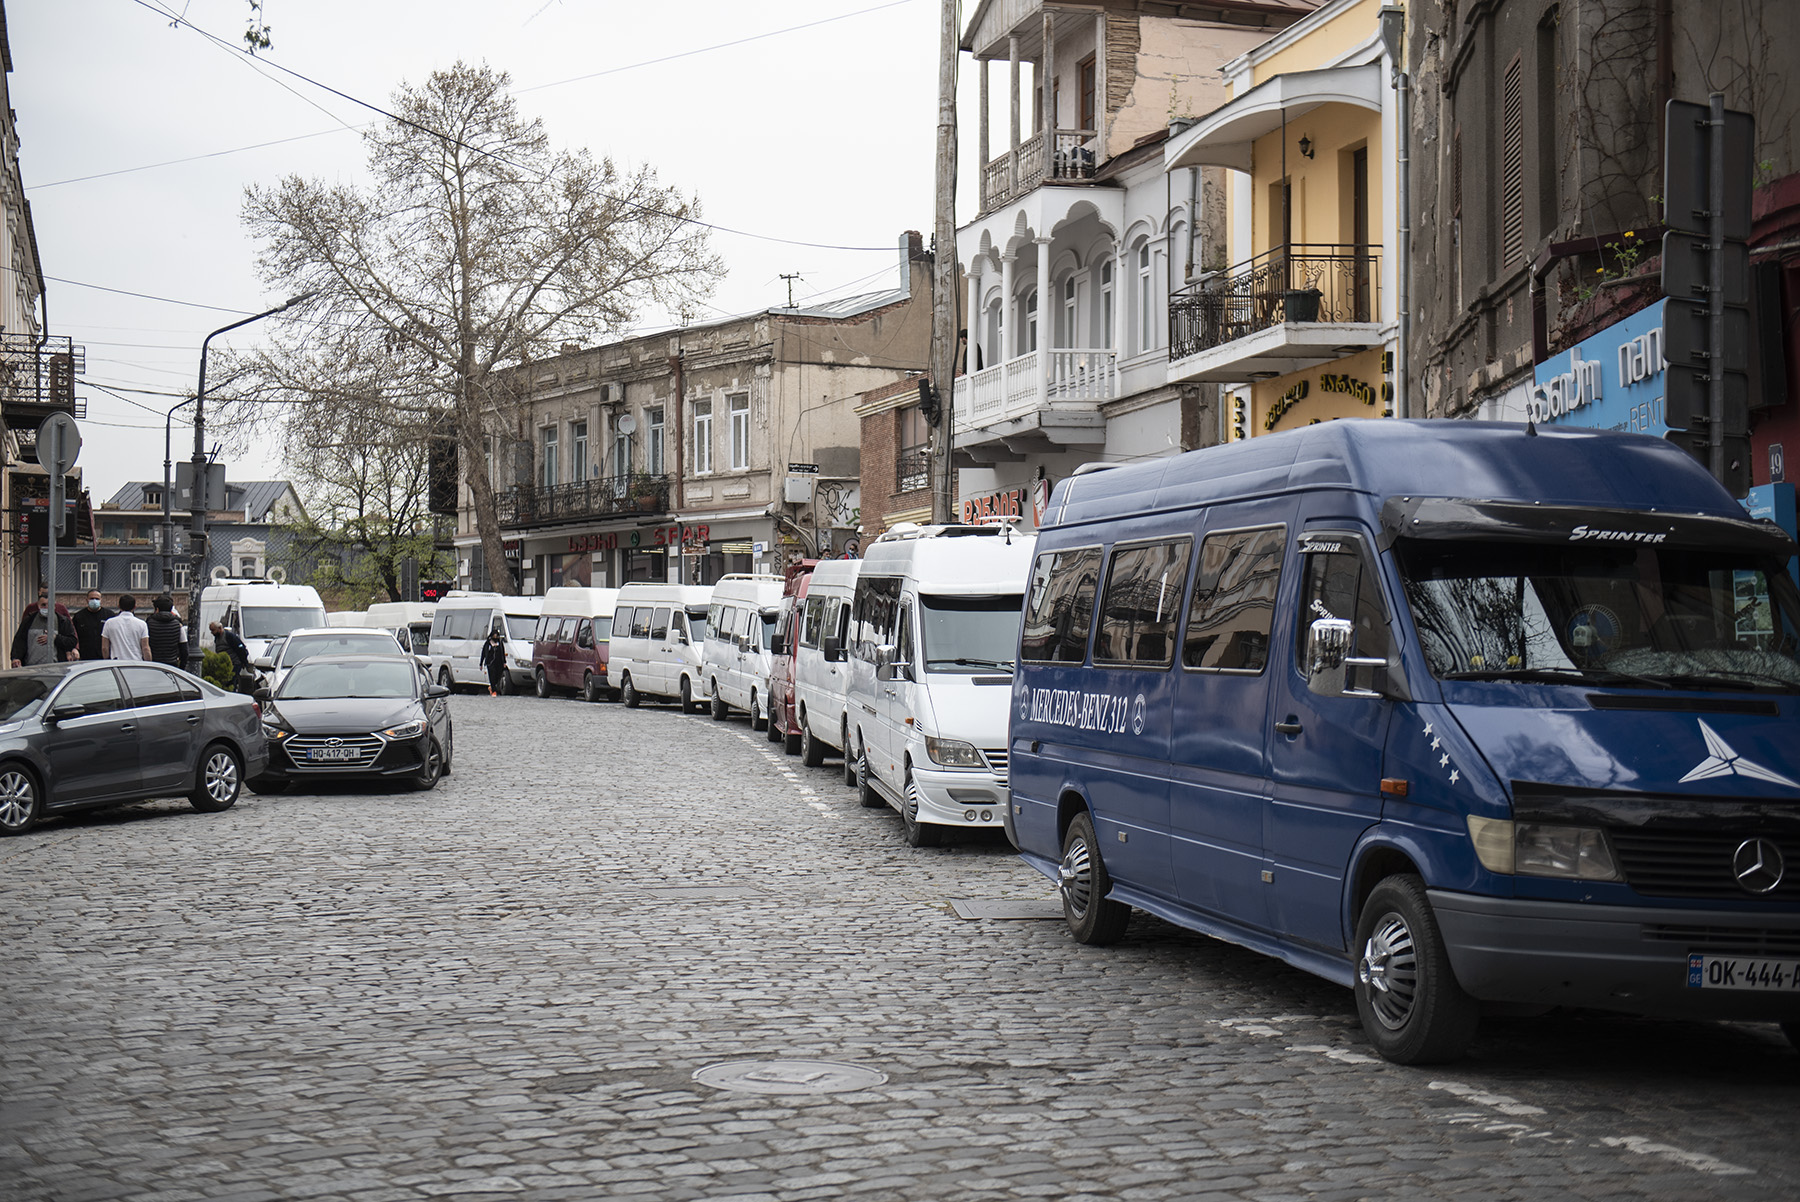 Десятки миниавтобусов припаркованы на нескольких улицах недалеко от места, где проходила демонстрация. Фото: Мариам Никурадзе/OC Media.